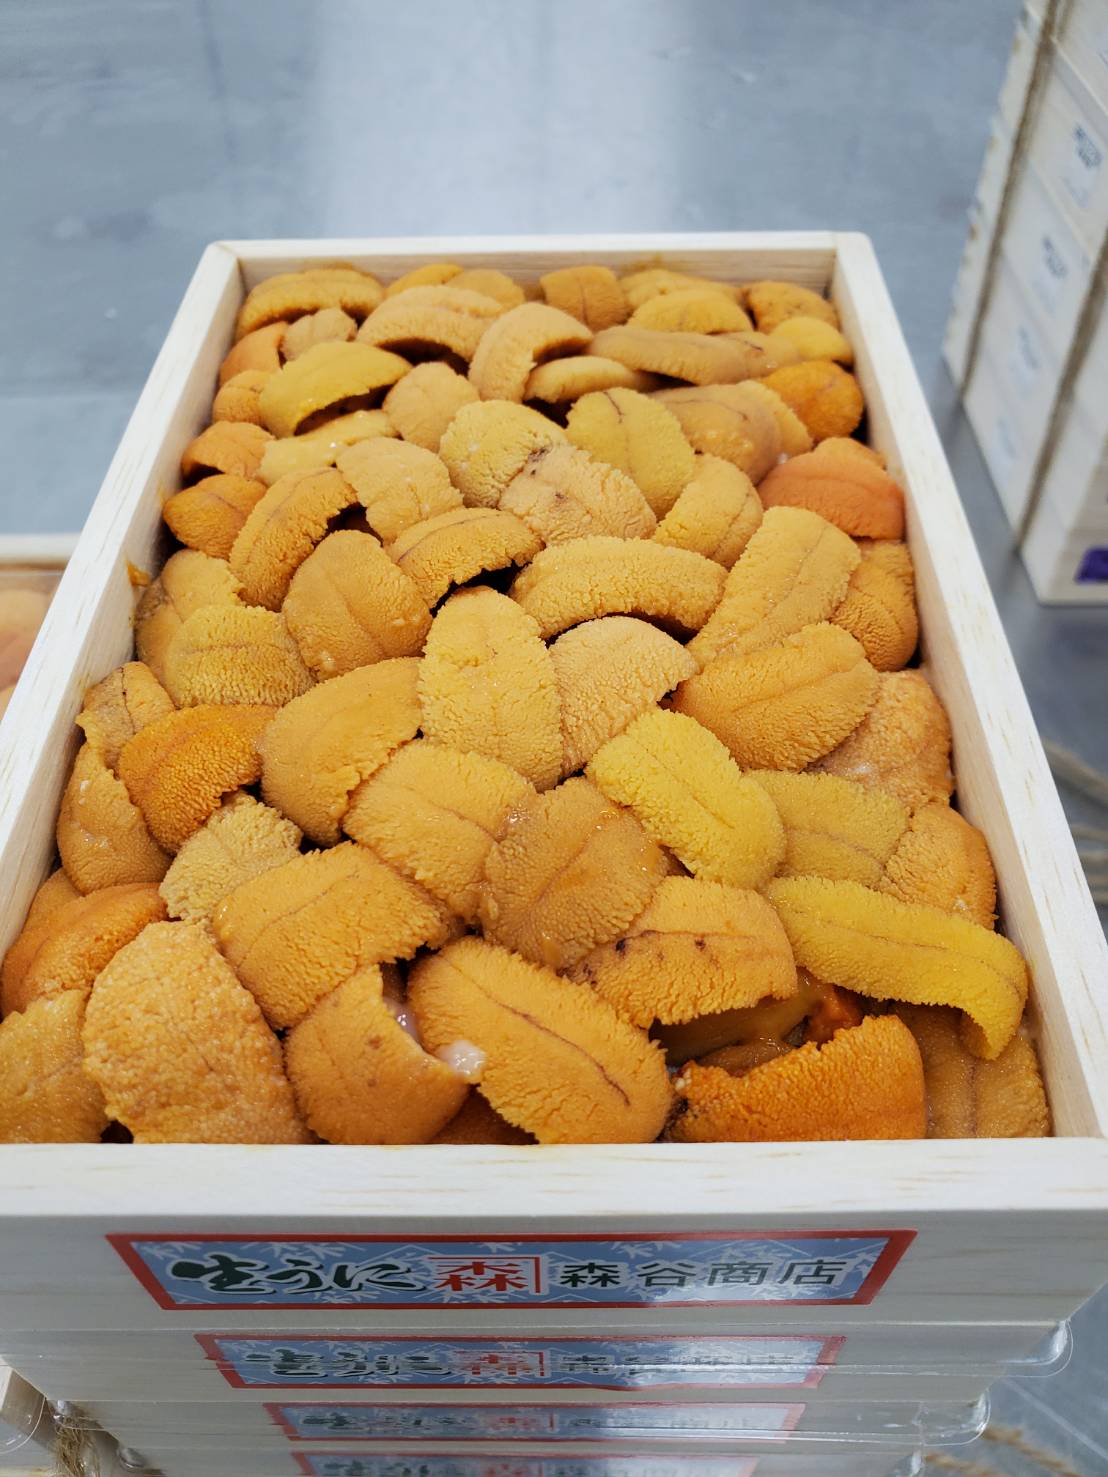 Uni Red Sea Urchin from Hokkaido250g box 豊洲直送!北海道産生うに